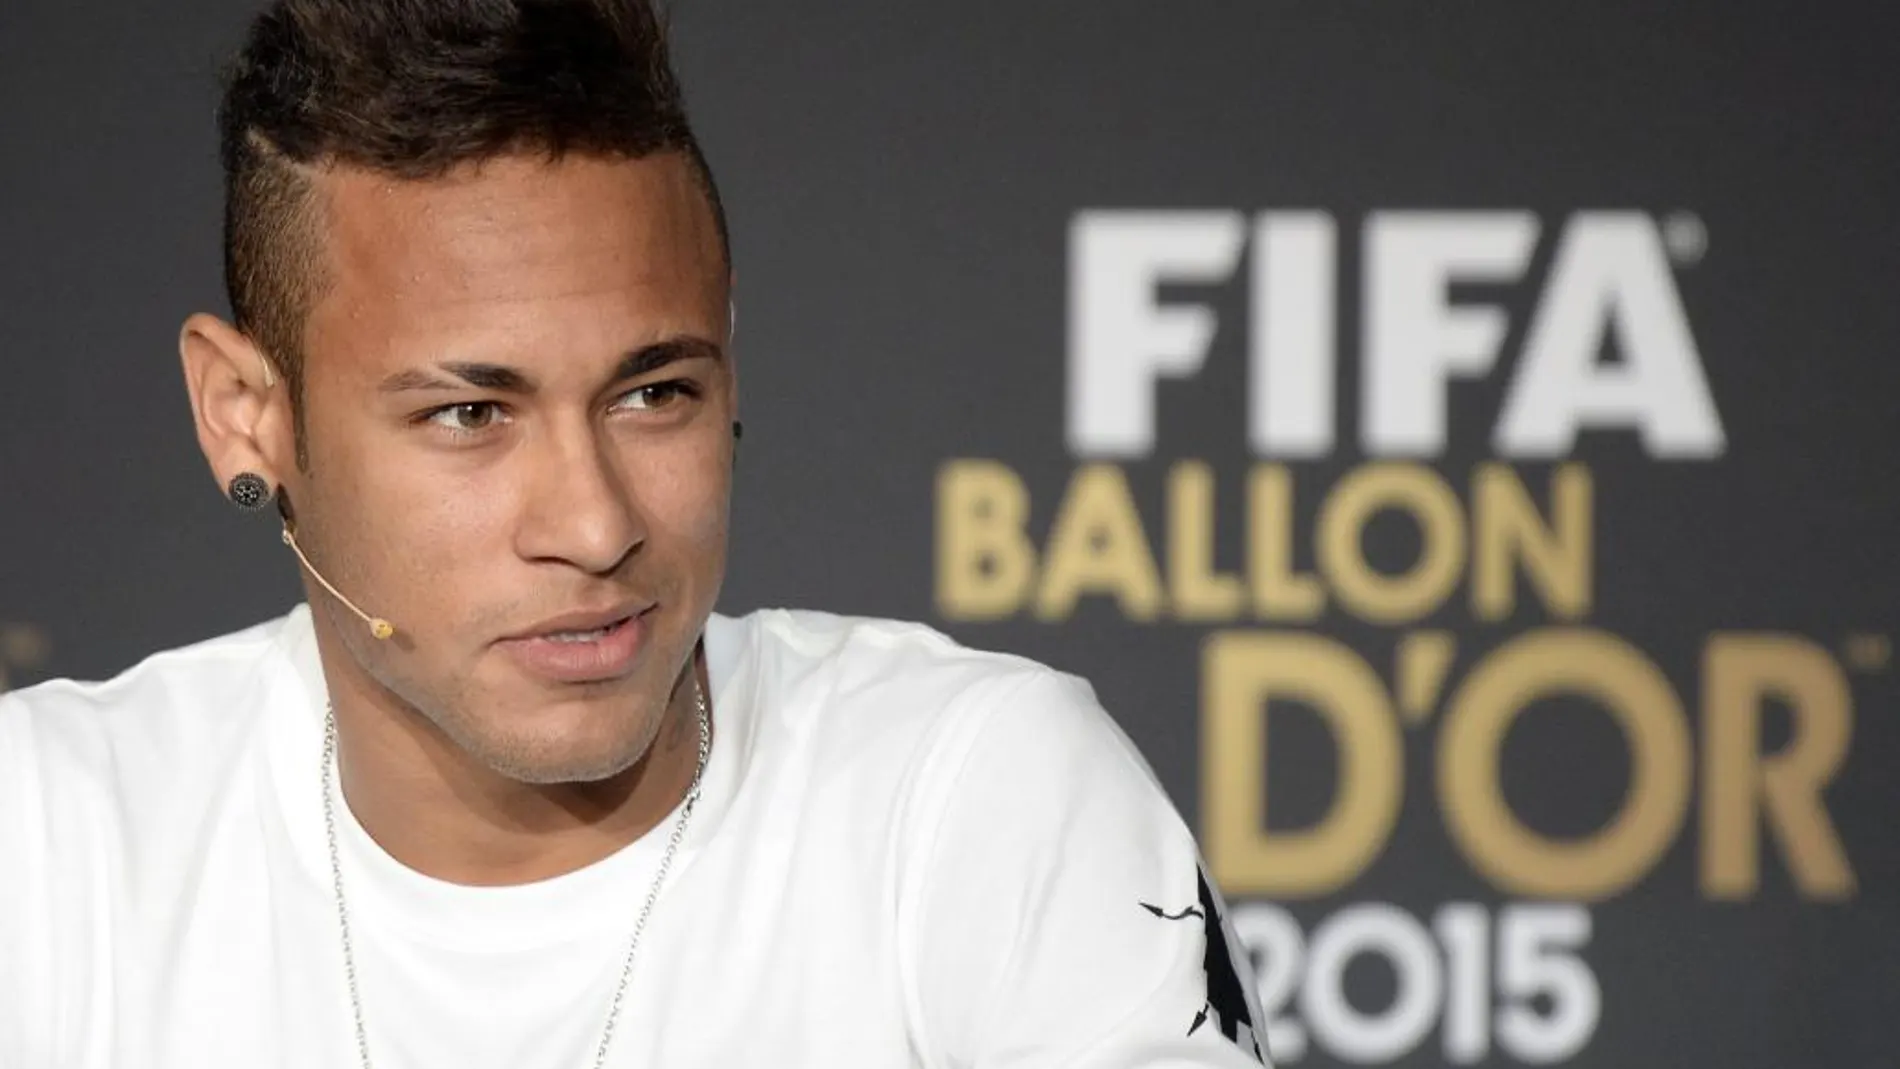 El delantero del Fútbol Club Barcelona Neymar Da Silva Santos declarará en calidad de persona investigada